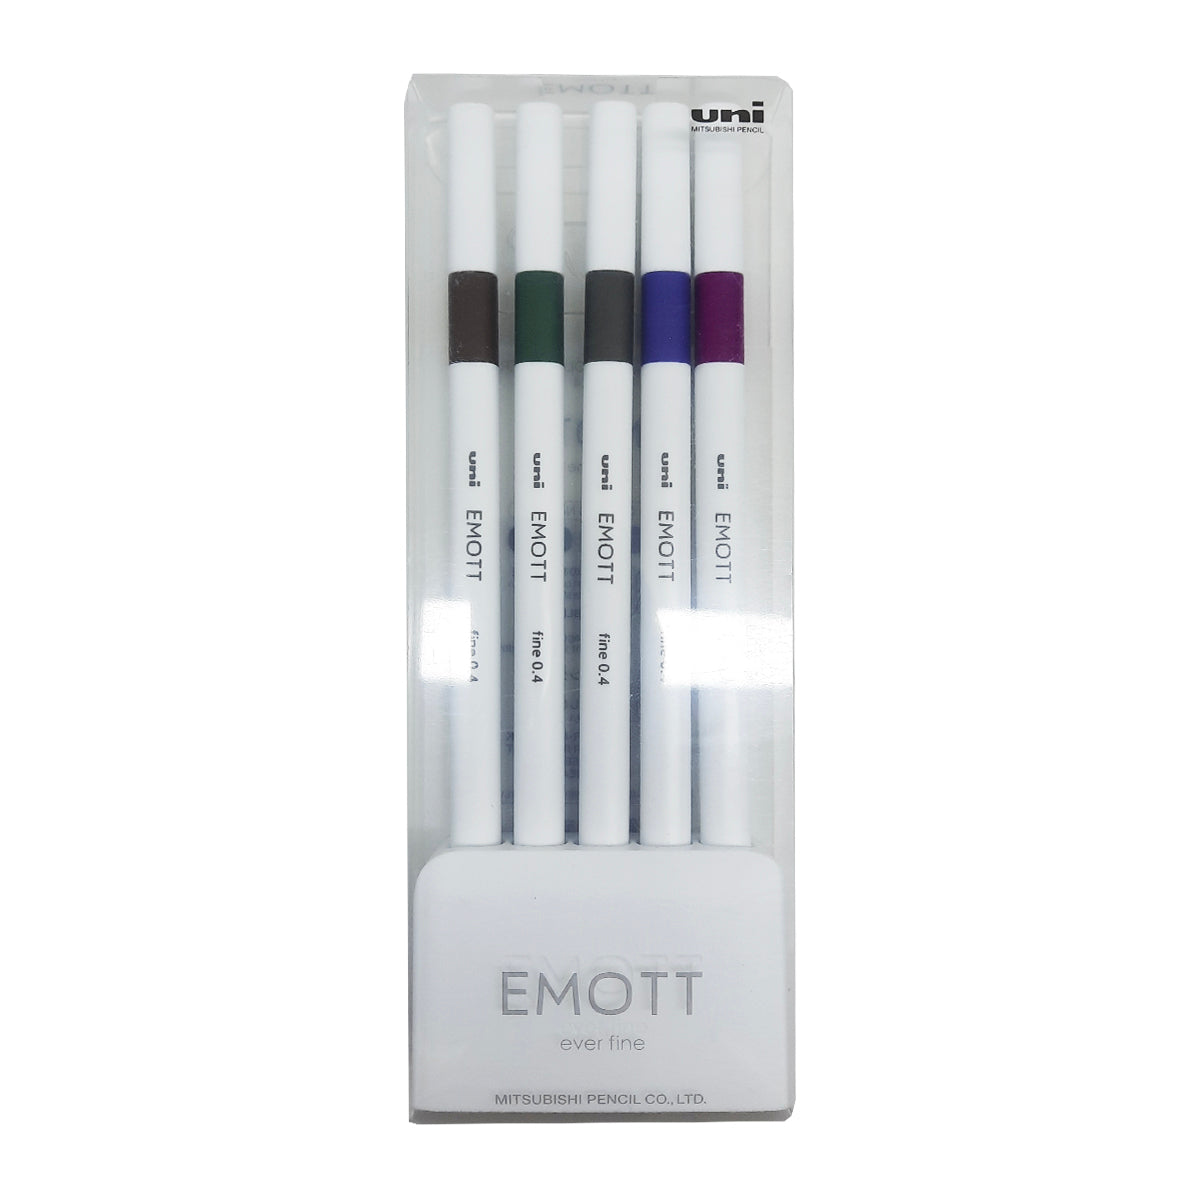 Uniball Emott 0.4 Fineliner 5 Color Set No.3 from najmaonline.com Art & Craft pens Abu Dhabi, Dubai - UAE